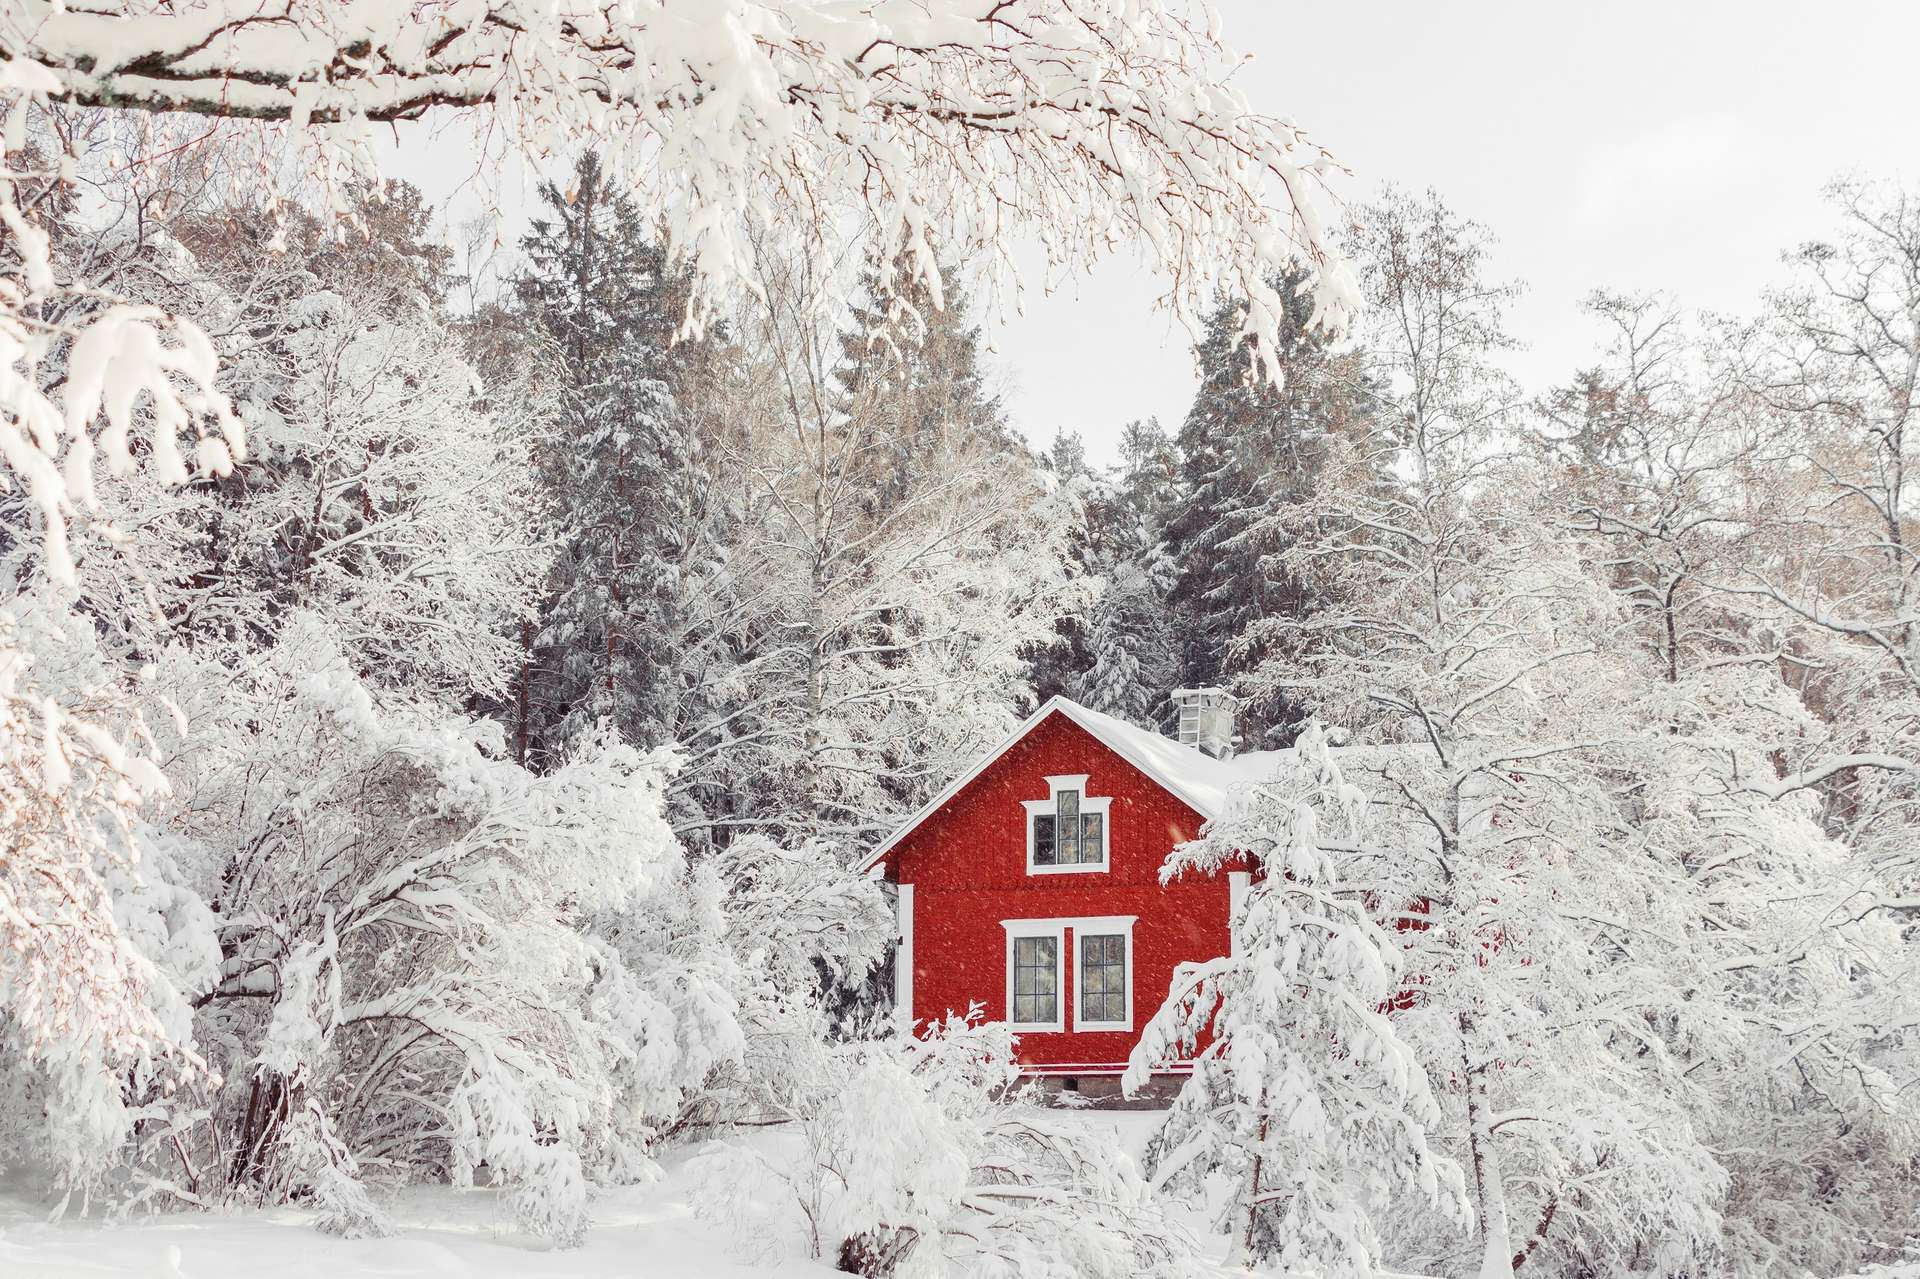 La Suède endure ses températures les plus basses depuis 25 ans : -43 °C !